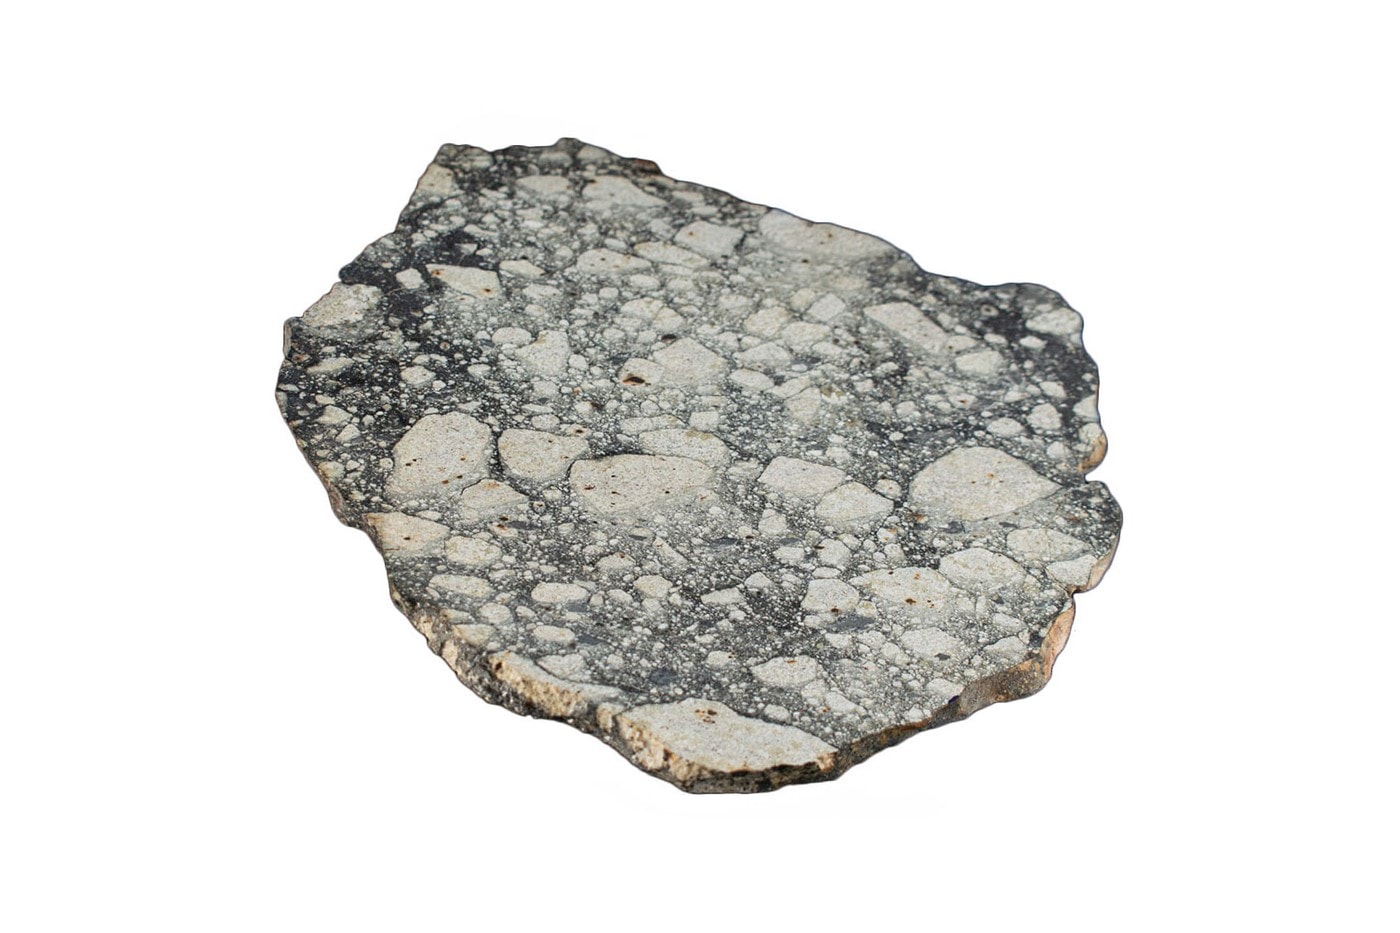 錯過不再 − 稀有 NWA 5000 隕石碎片目前以 25 萬美元正式拍賣中